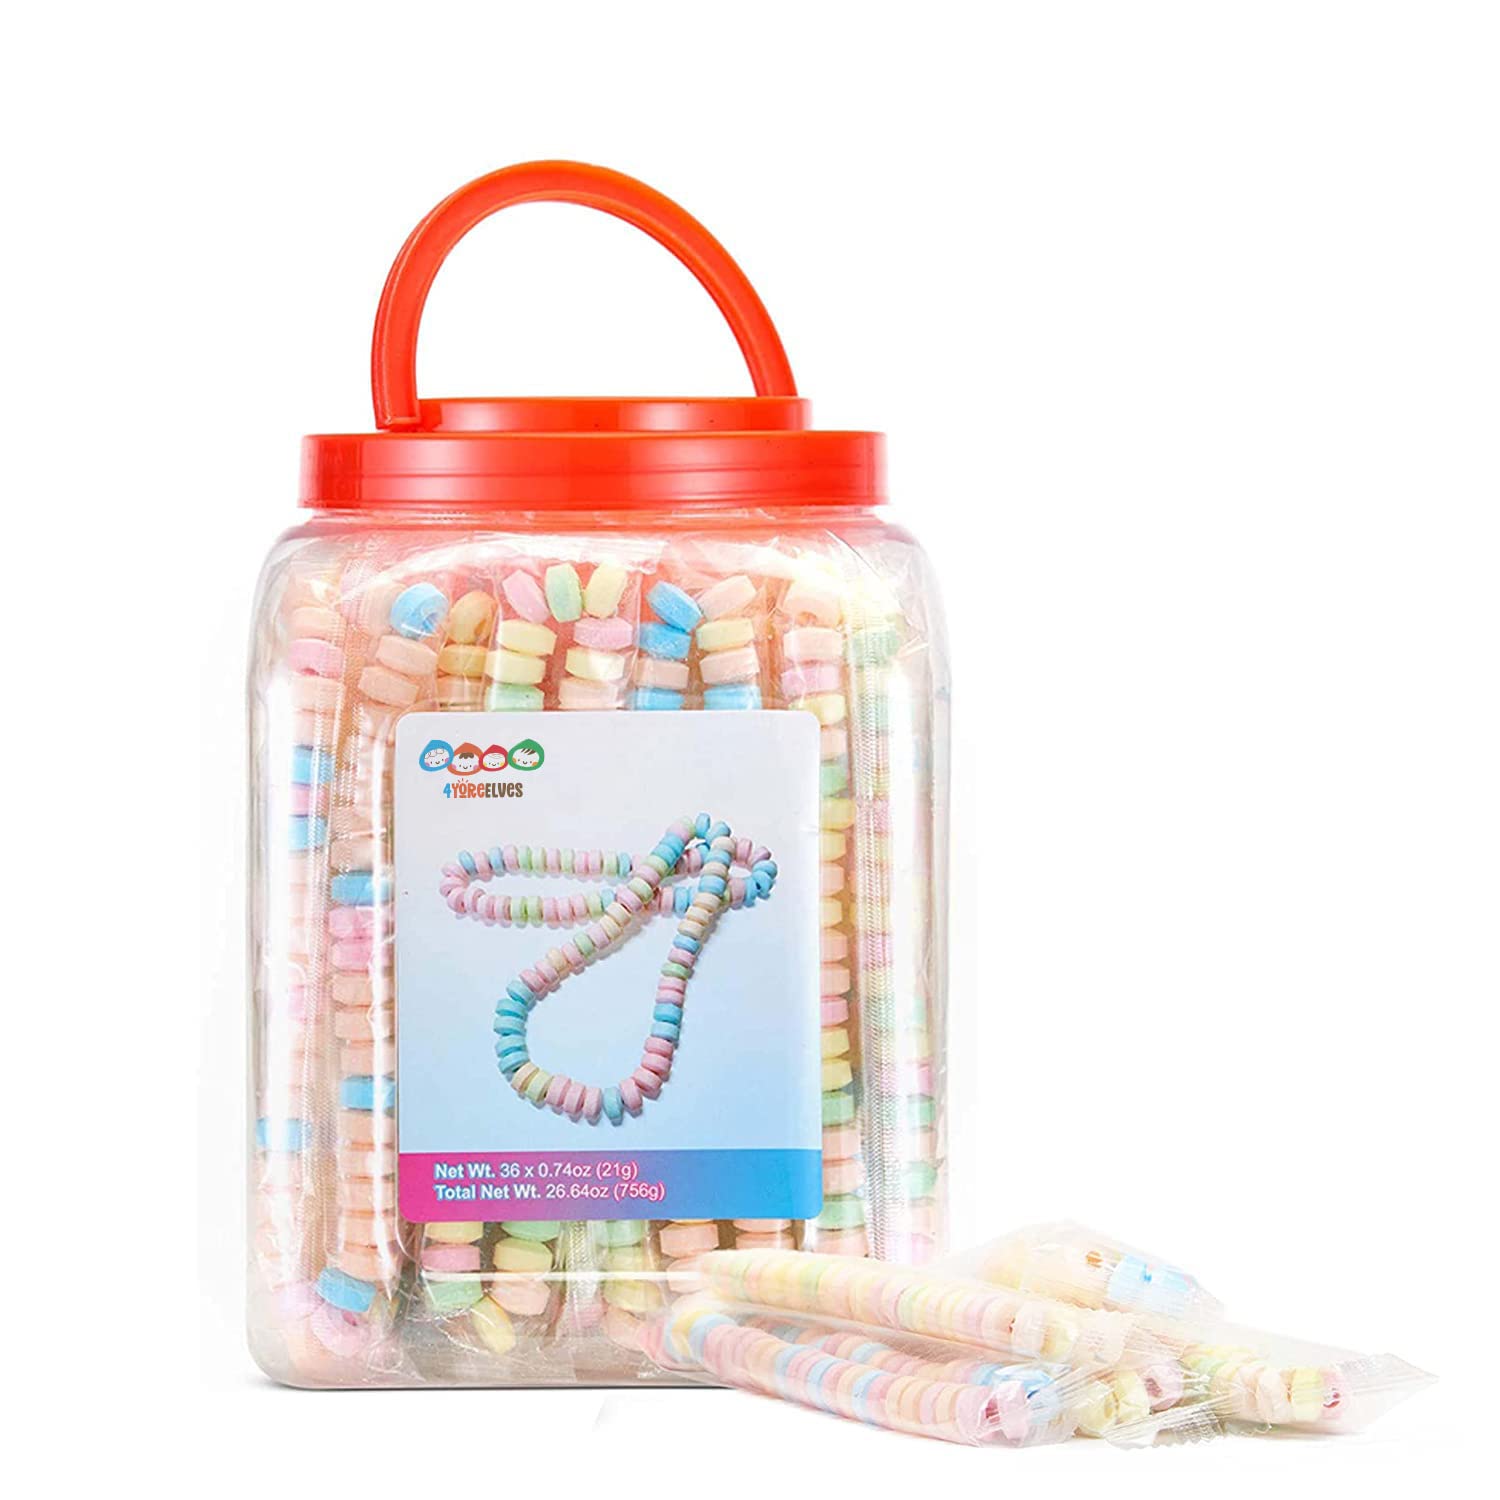 Nice! Candy Bracelets - 11.0 oz